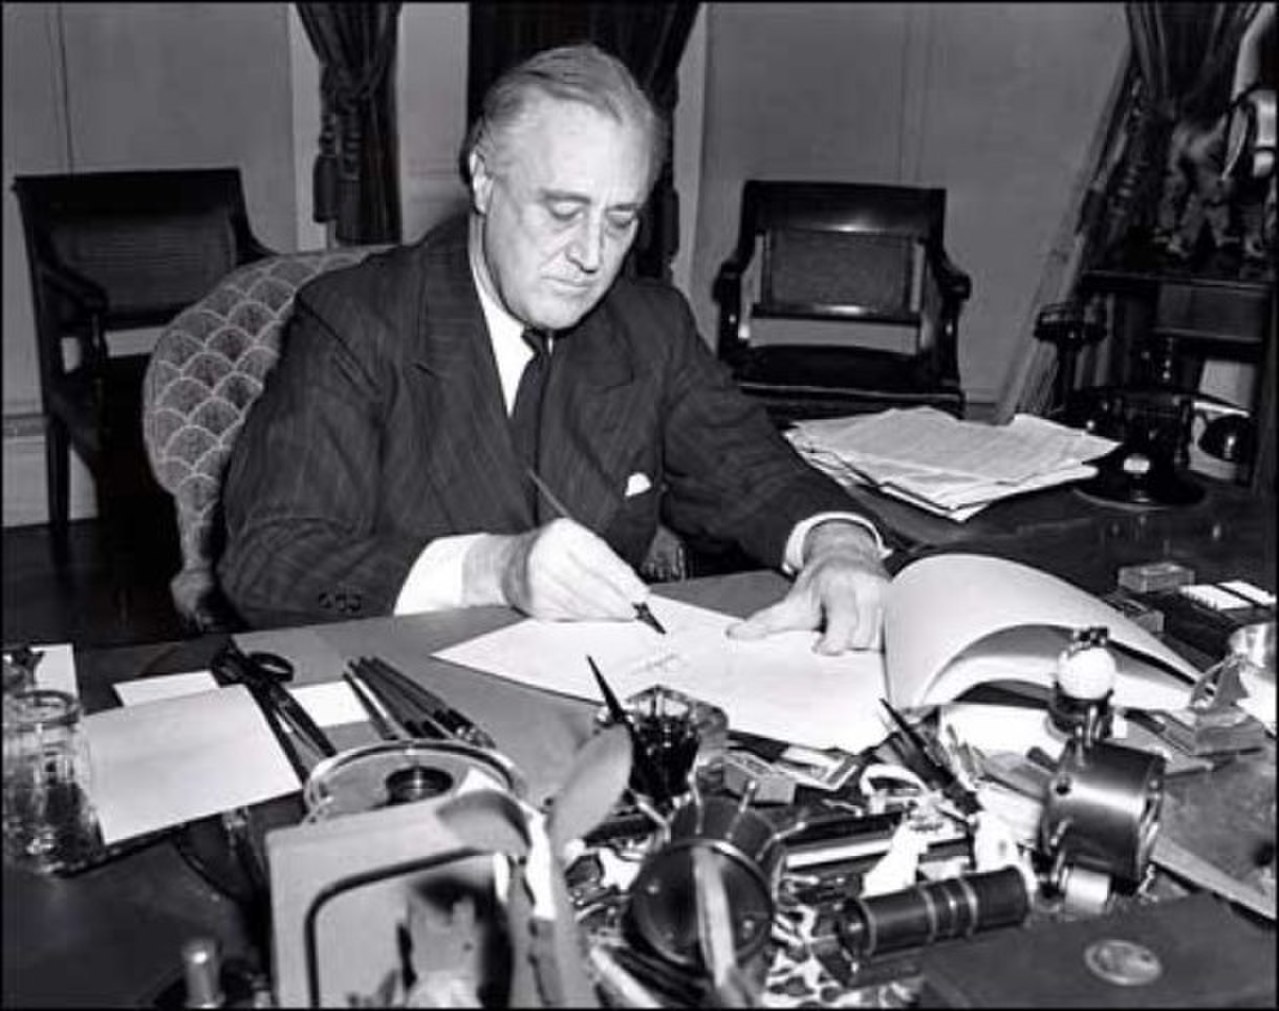 1280px-President_Franklin_D._Roosevelt-1941.jpg